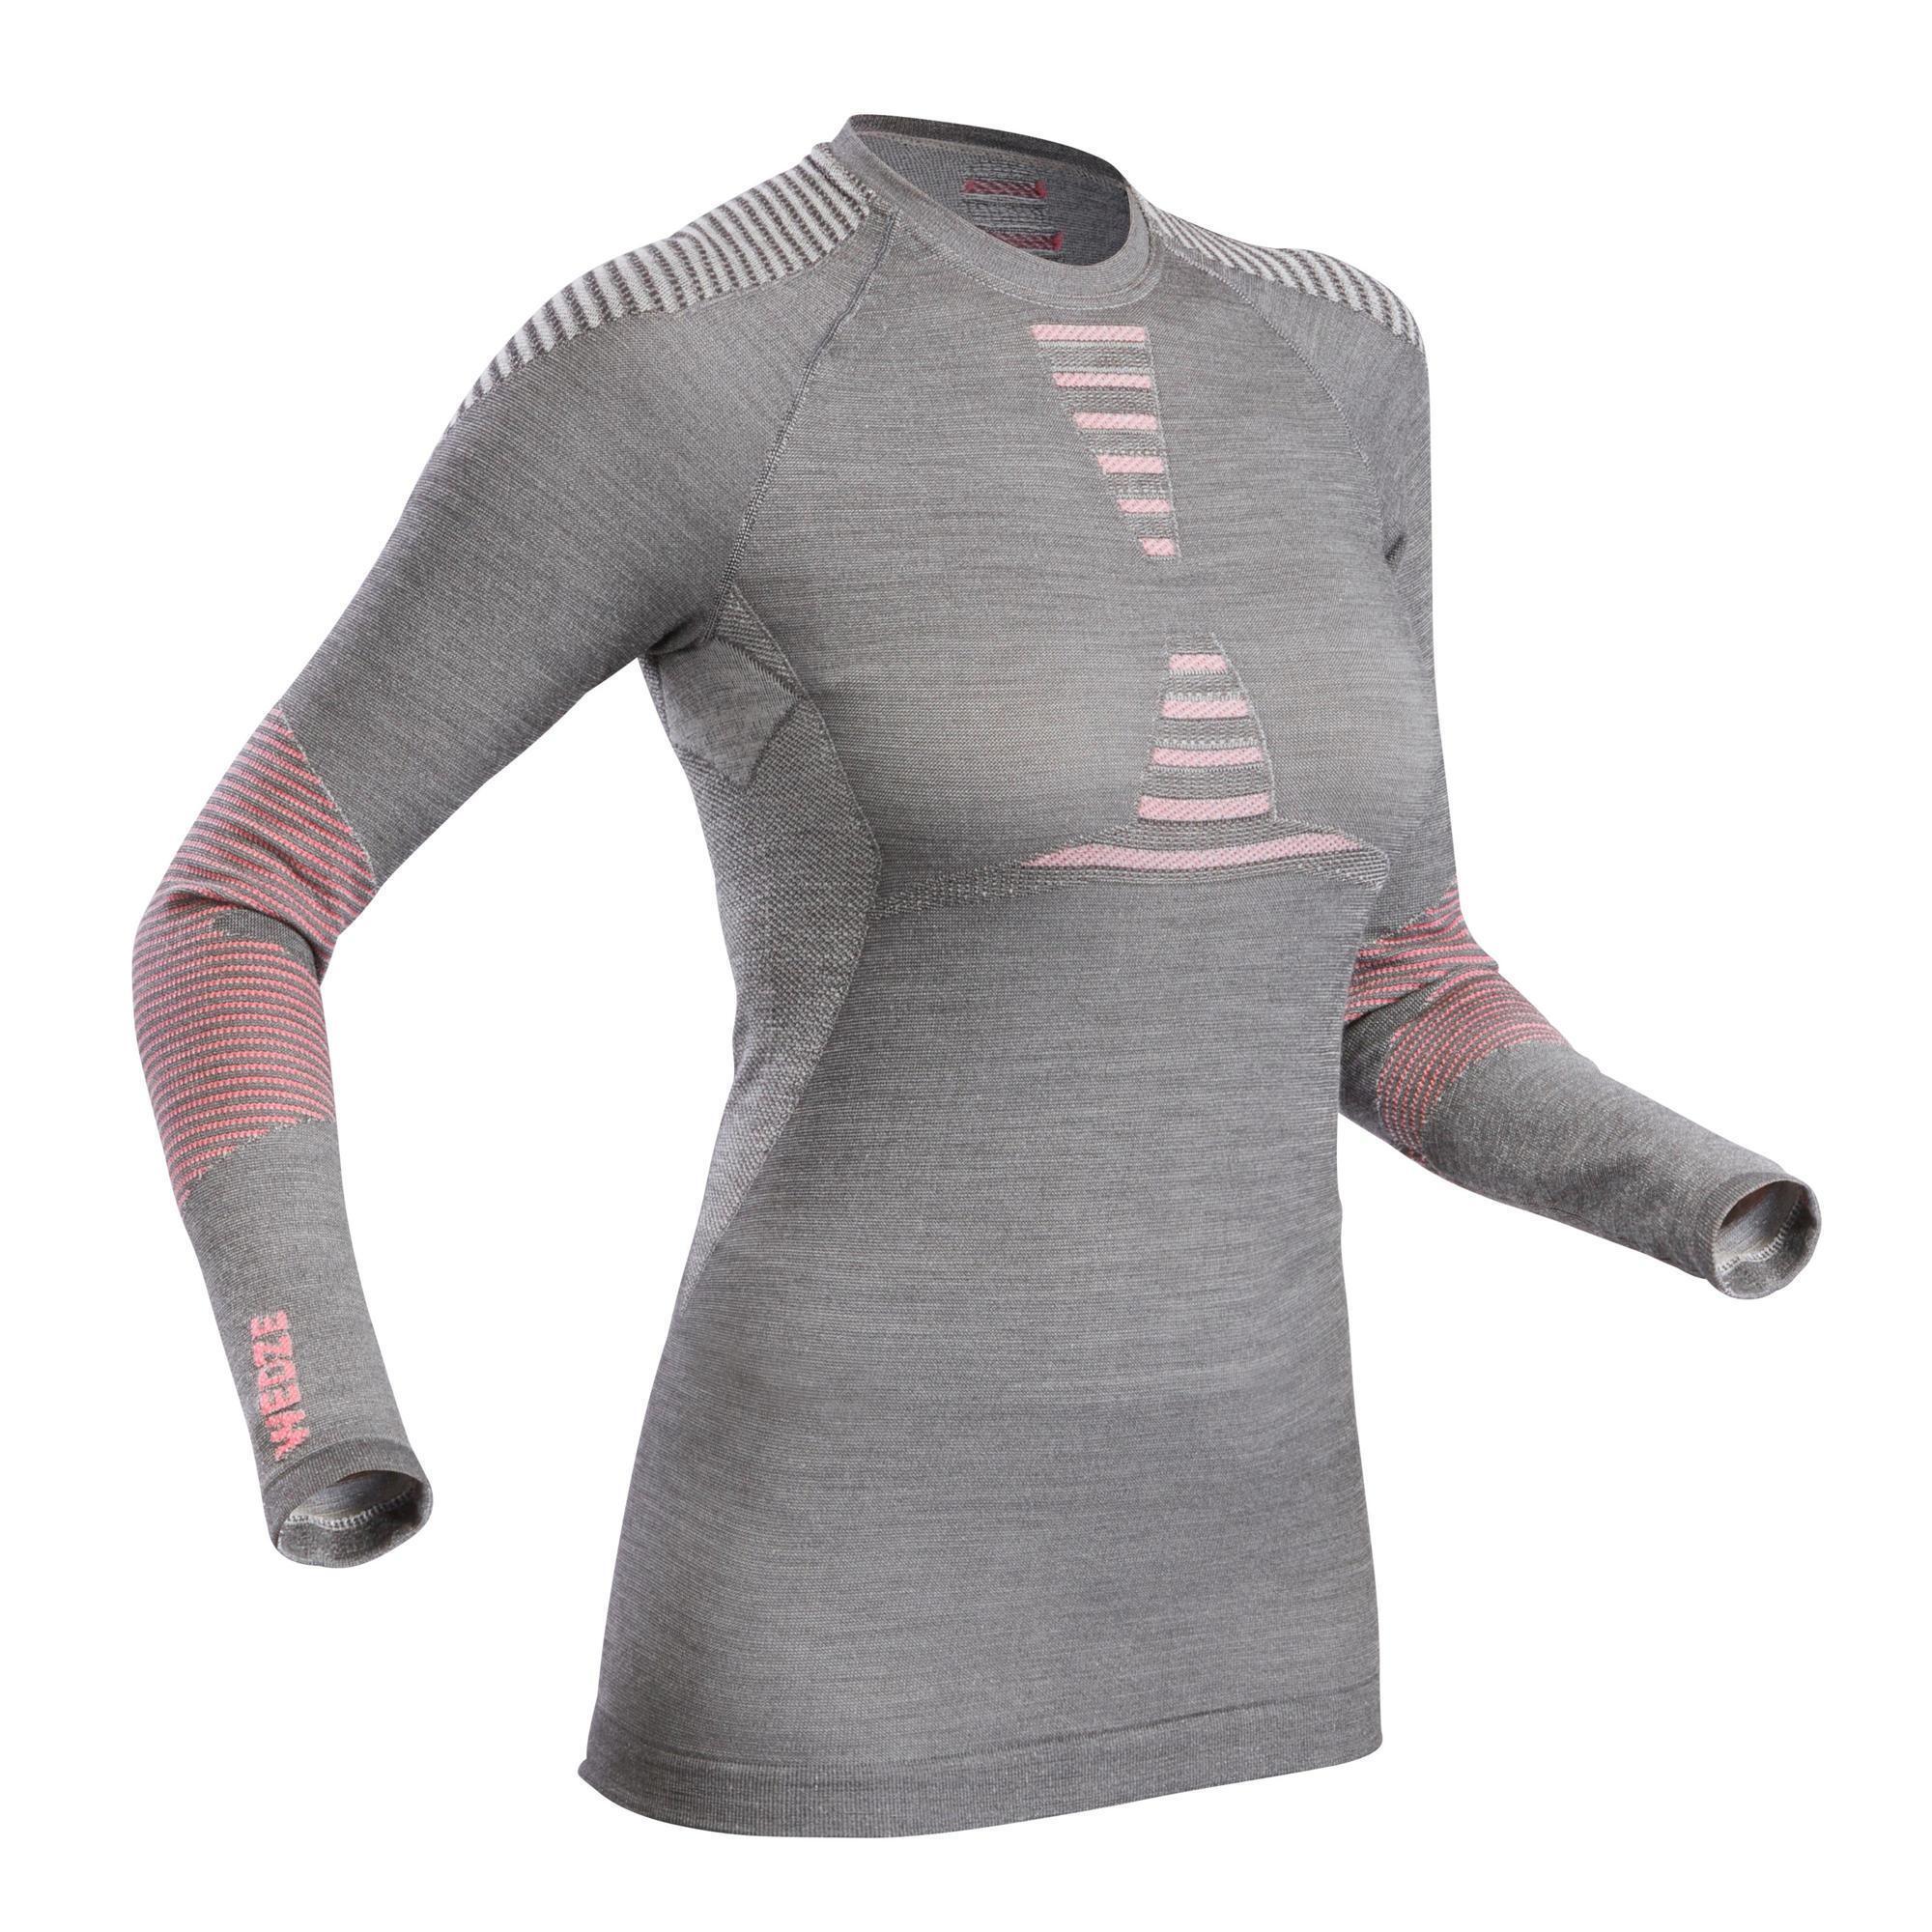 Women's 900 Merino wool seamless thermal base layer ski top - grey/pink 2/5